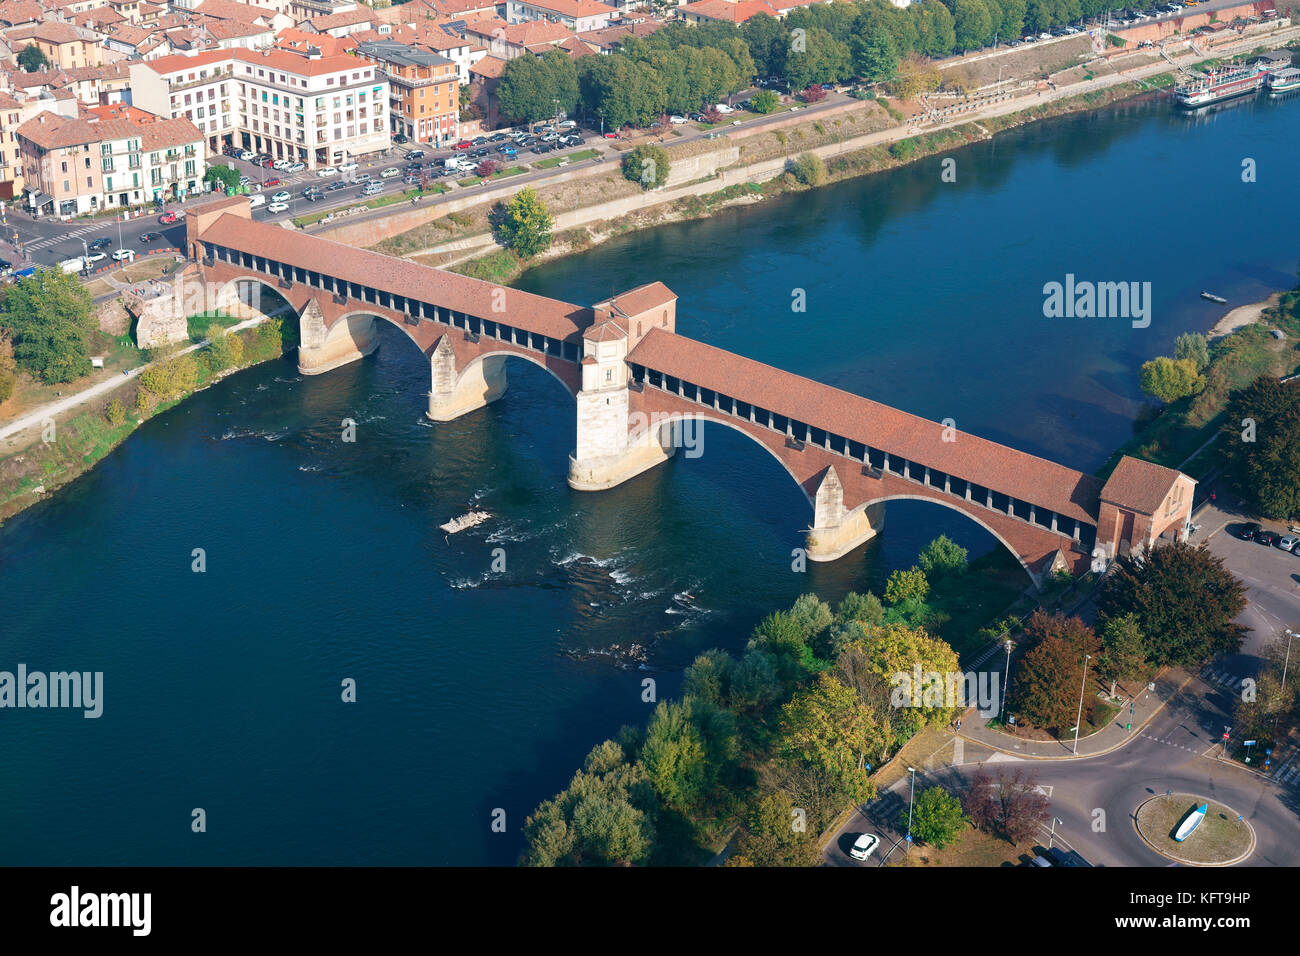 LUFTAUFNAHME. Historische überdachte Brücke (Ponte Coperto) über den Fluss Tessin, in der Mitte steht eine kleine Kapelle. Pavia, Lombardei, Italien. Stockfoto